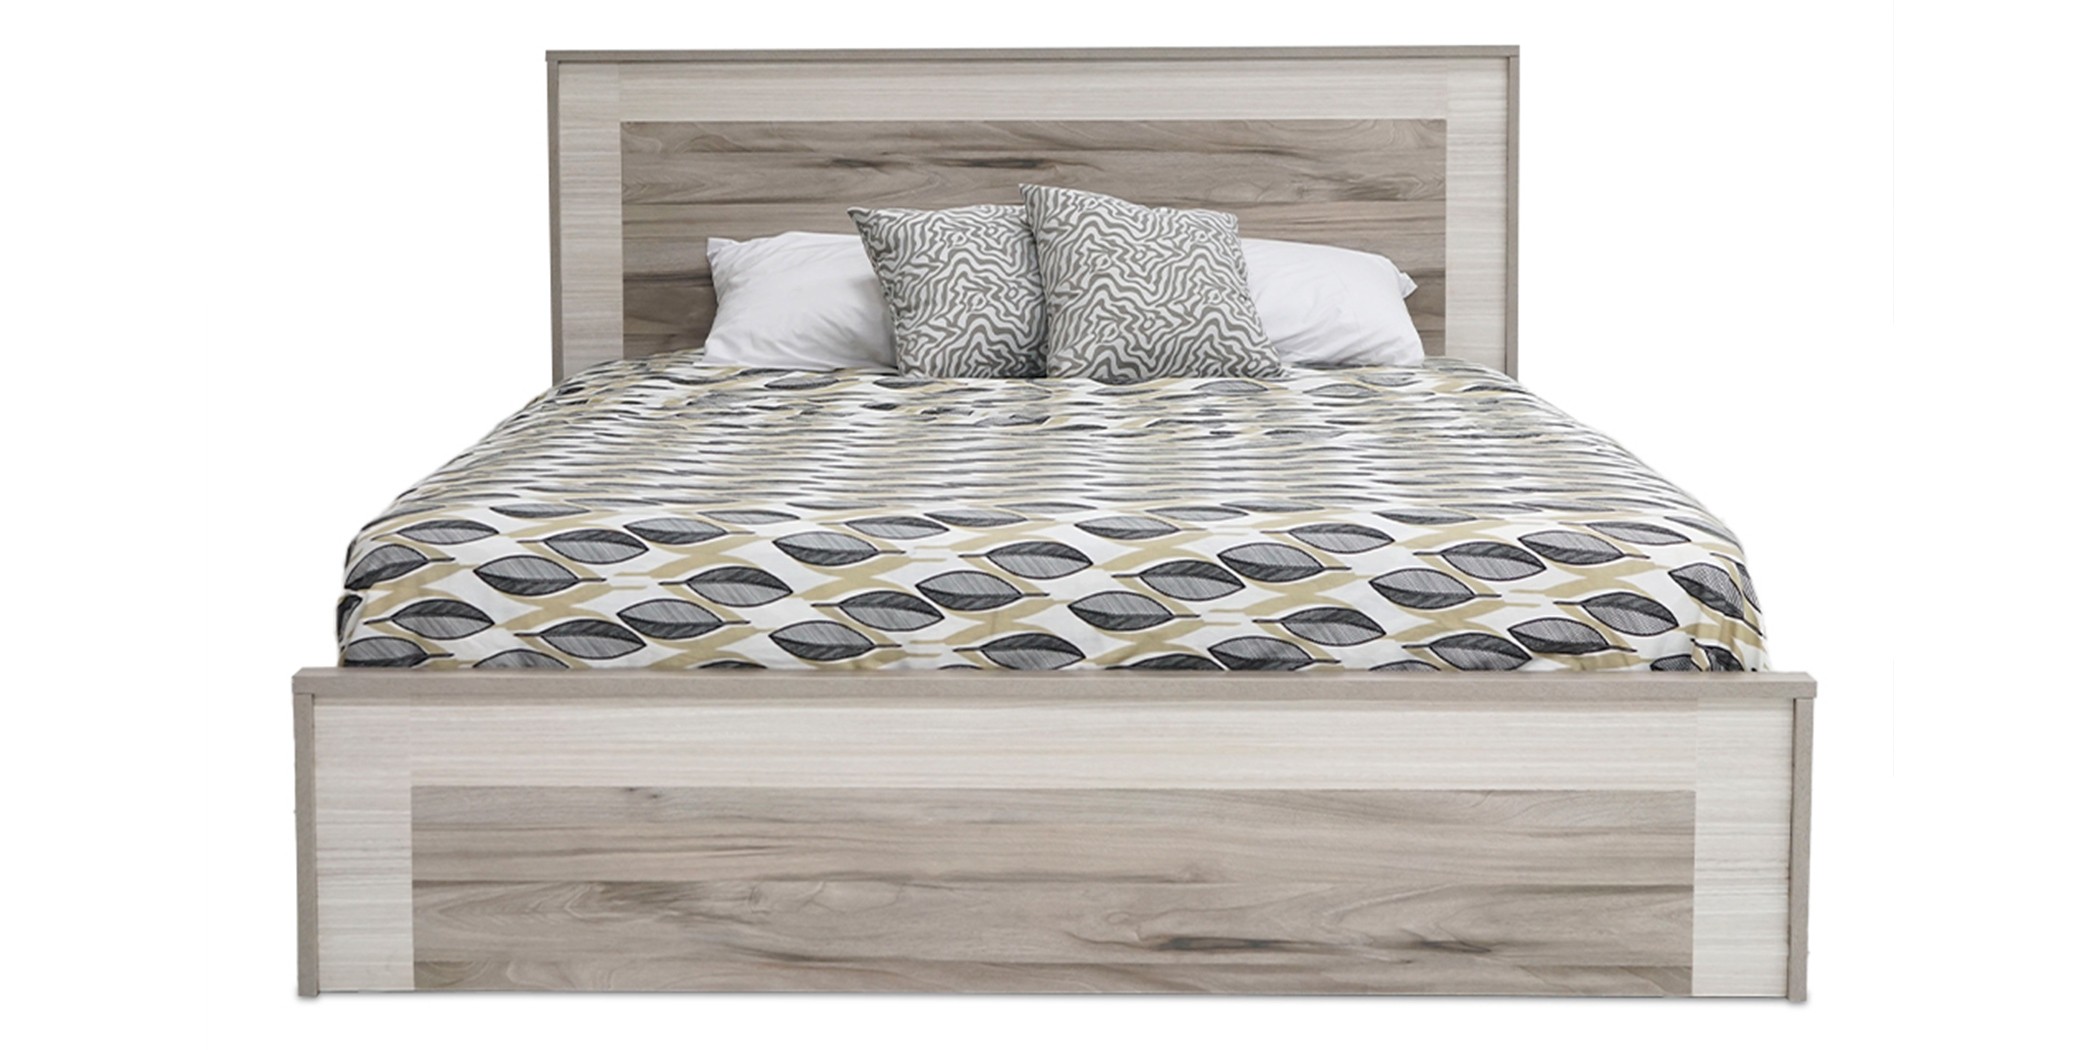 Beluga Bed 150x190 cm Paradise & San Marino